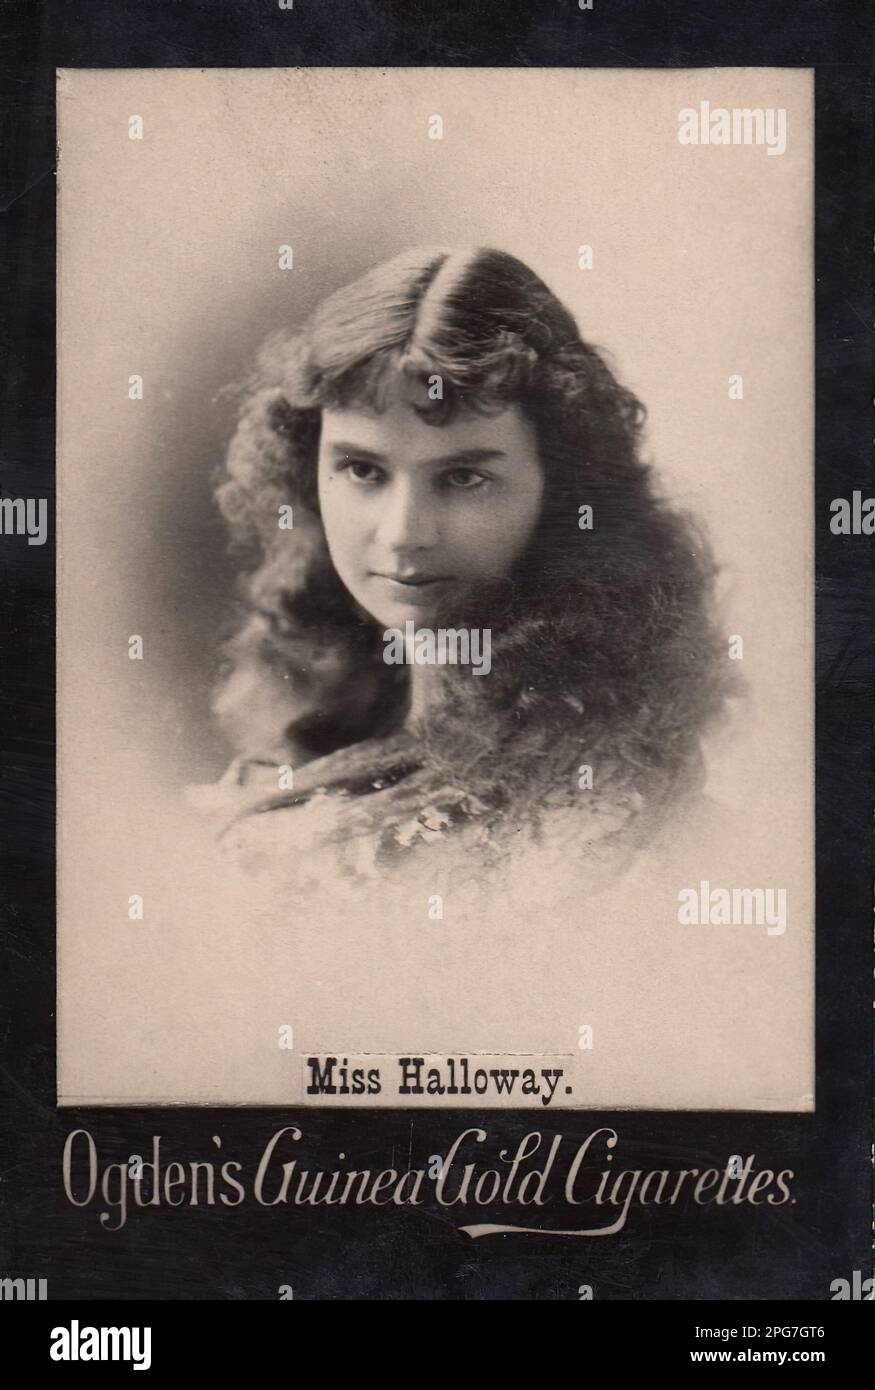 Porträt von Miss Halloway - Vintage-Zigarettenkarte aus der viktorianischen Ära Stockfoto